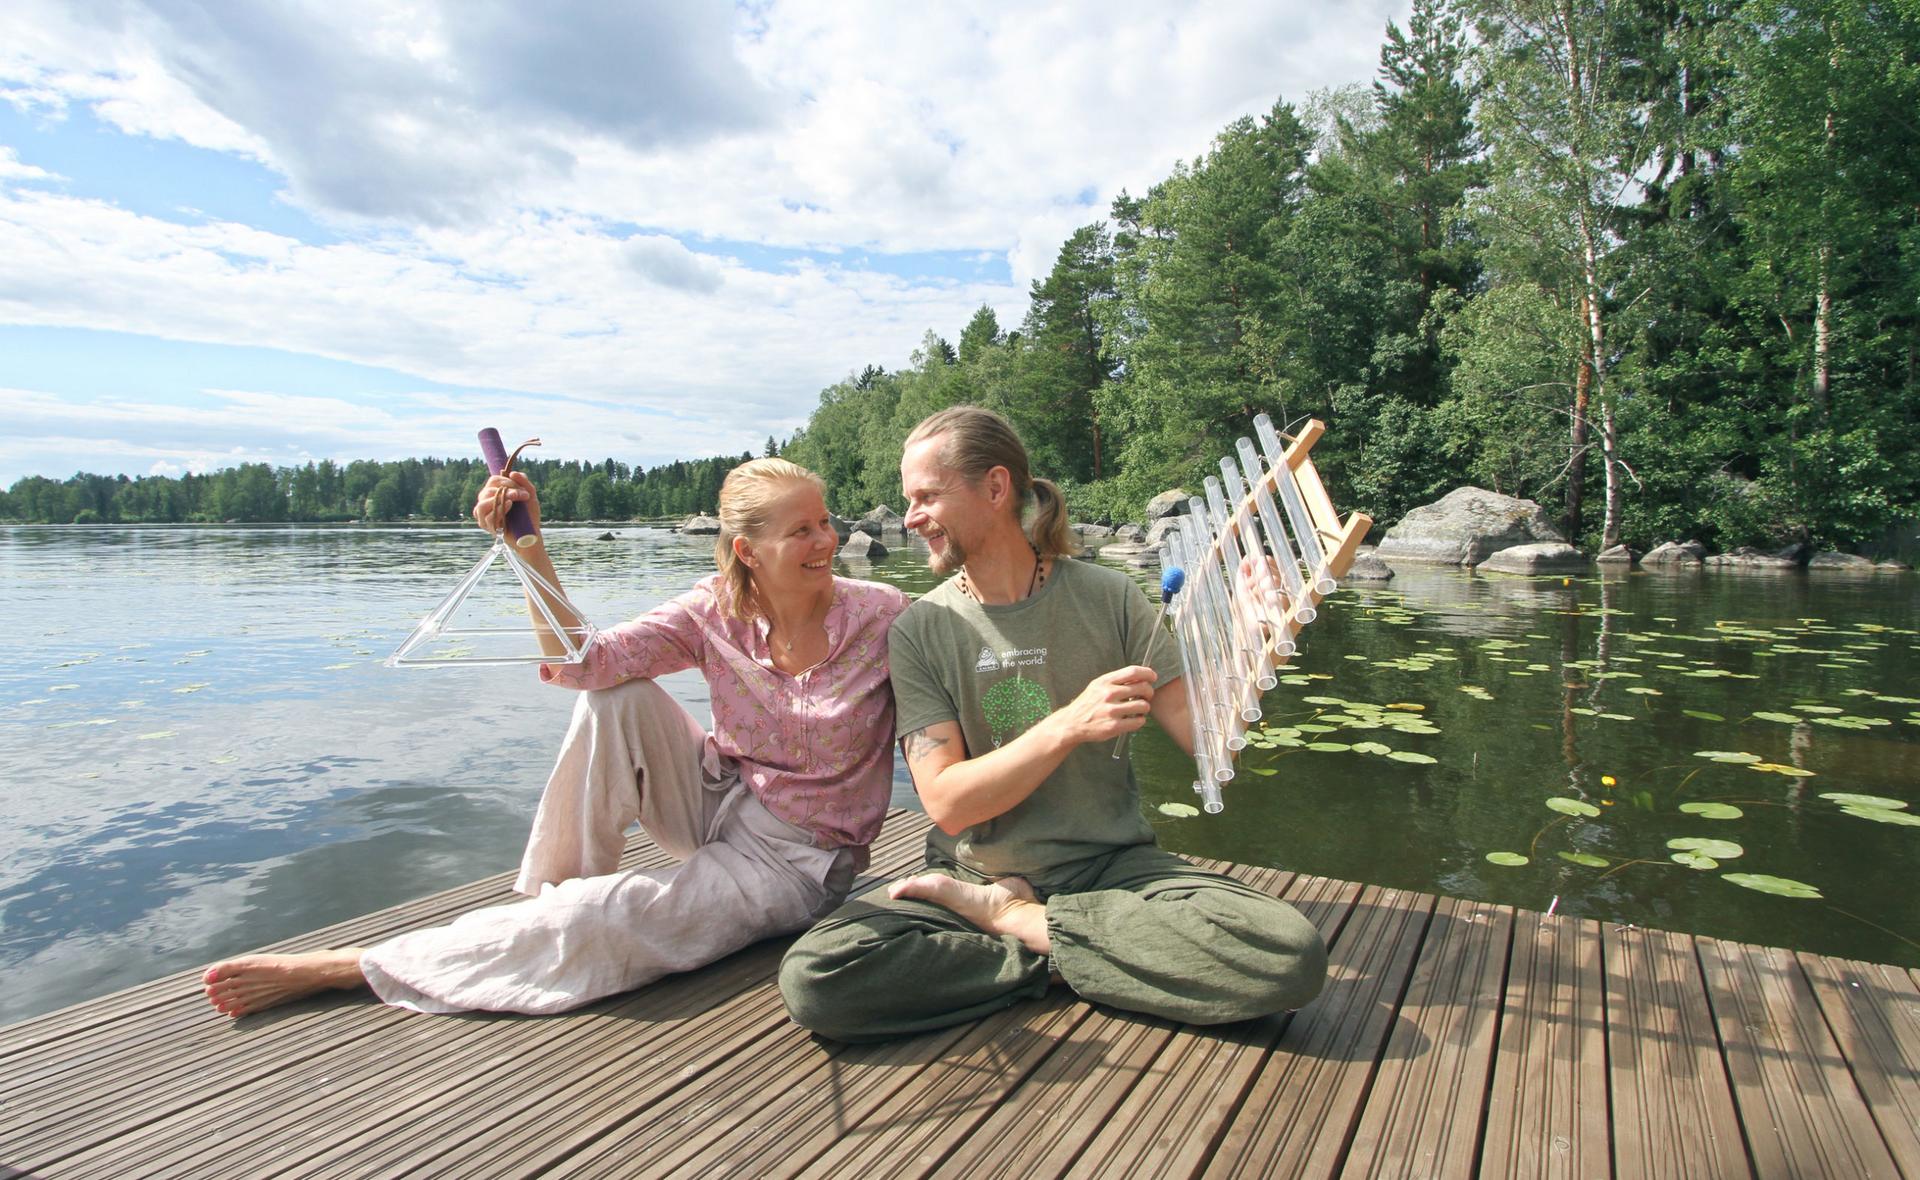 Katri Levonen ja Mika Kunnasvaara sanovat haluavansa auttaa ihmisiä, jotta jokainen voisi kokea sisäisen rakkauden, luottamuksen ja elämänilon.